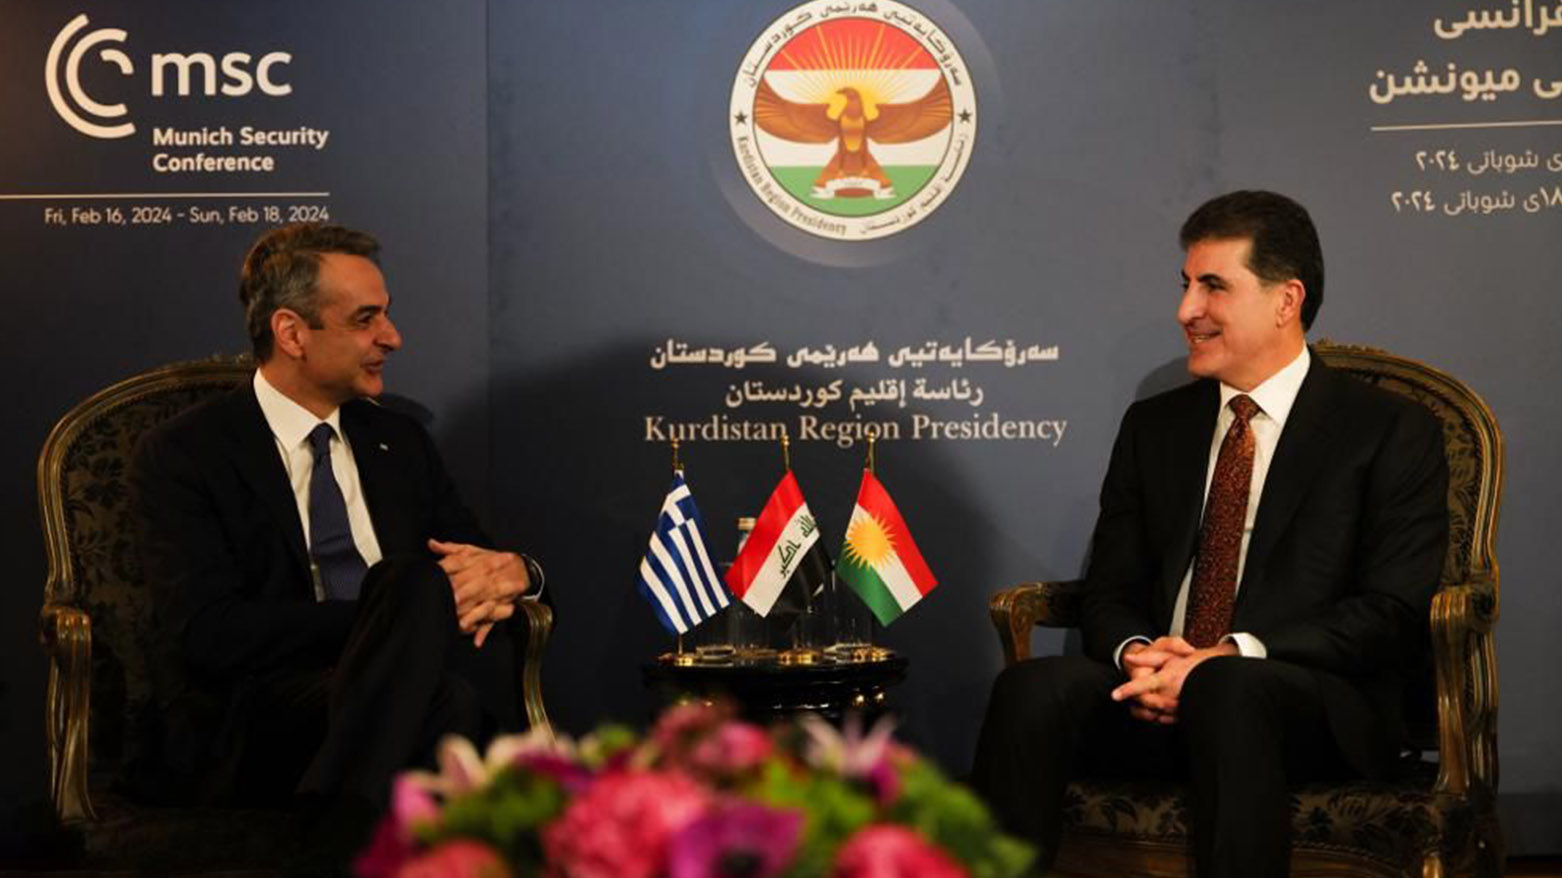 رئيس إقليم كوردستان يلتقي رئيس الوزراء اليوناني في ميونخ